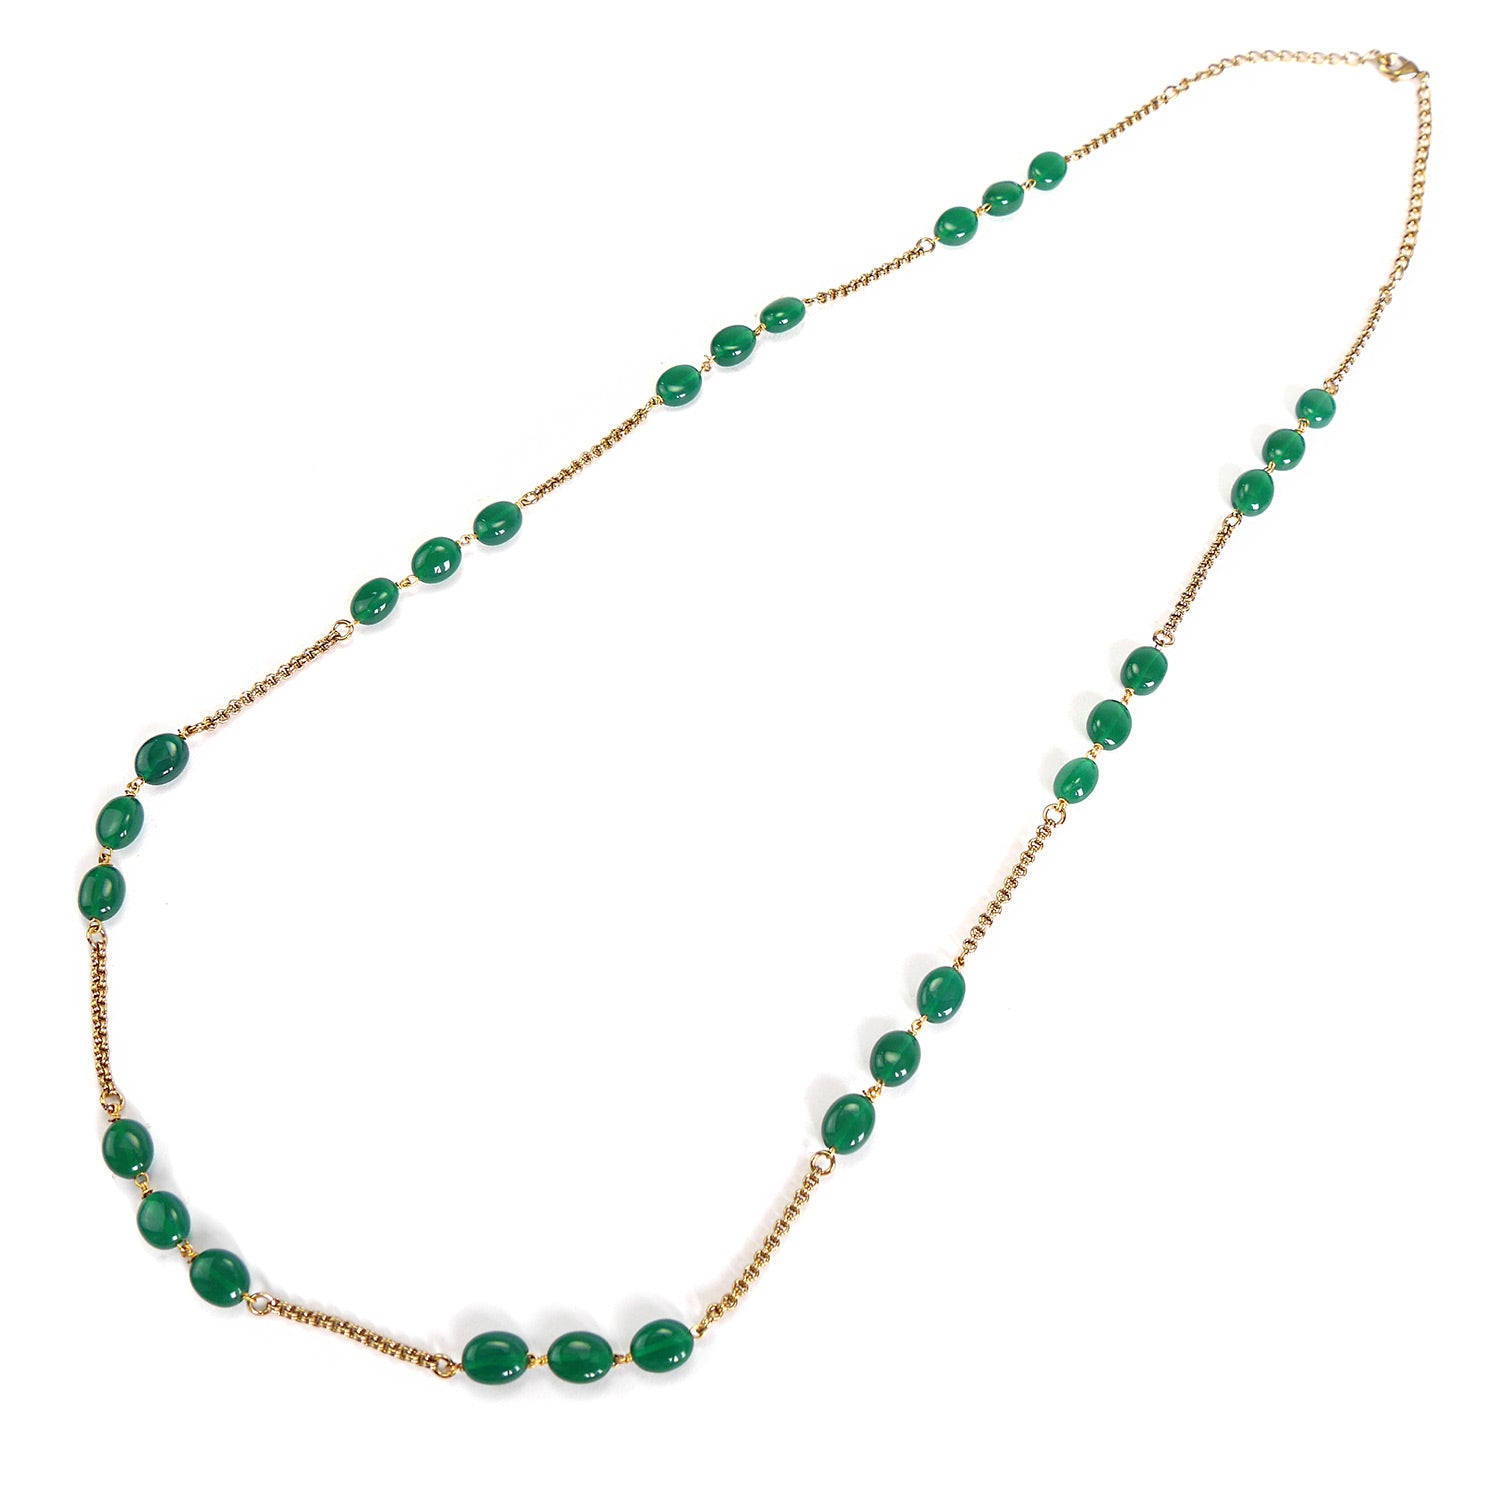 Lyla Long Bead Chain in Green